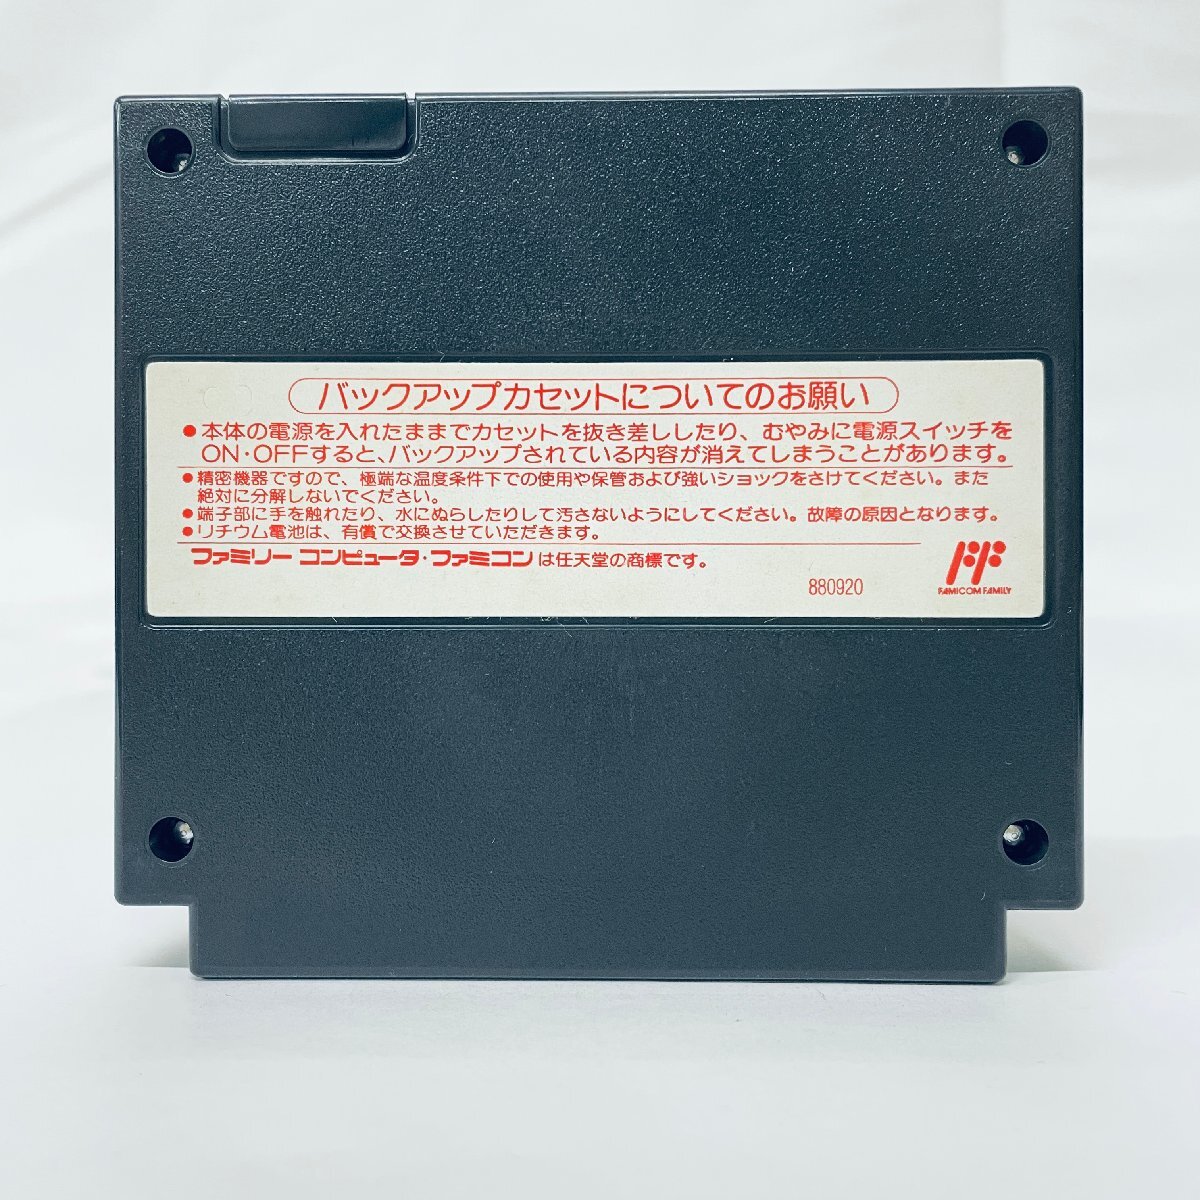  включение в покупку не возможно FC Famicom доверие длина. .... способ . запись soft коробка мнение есть пуск проверка settled 